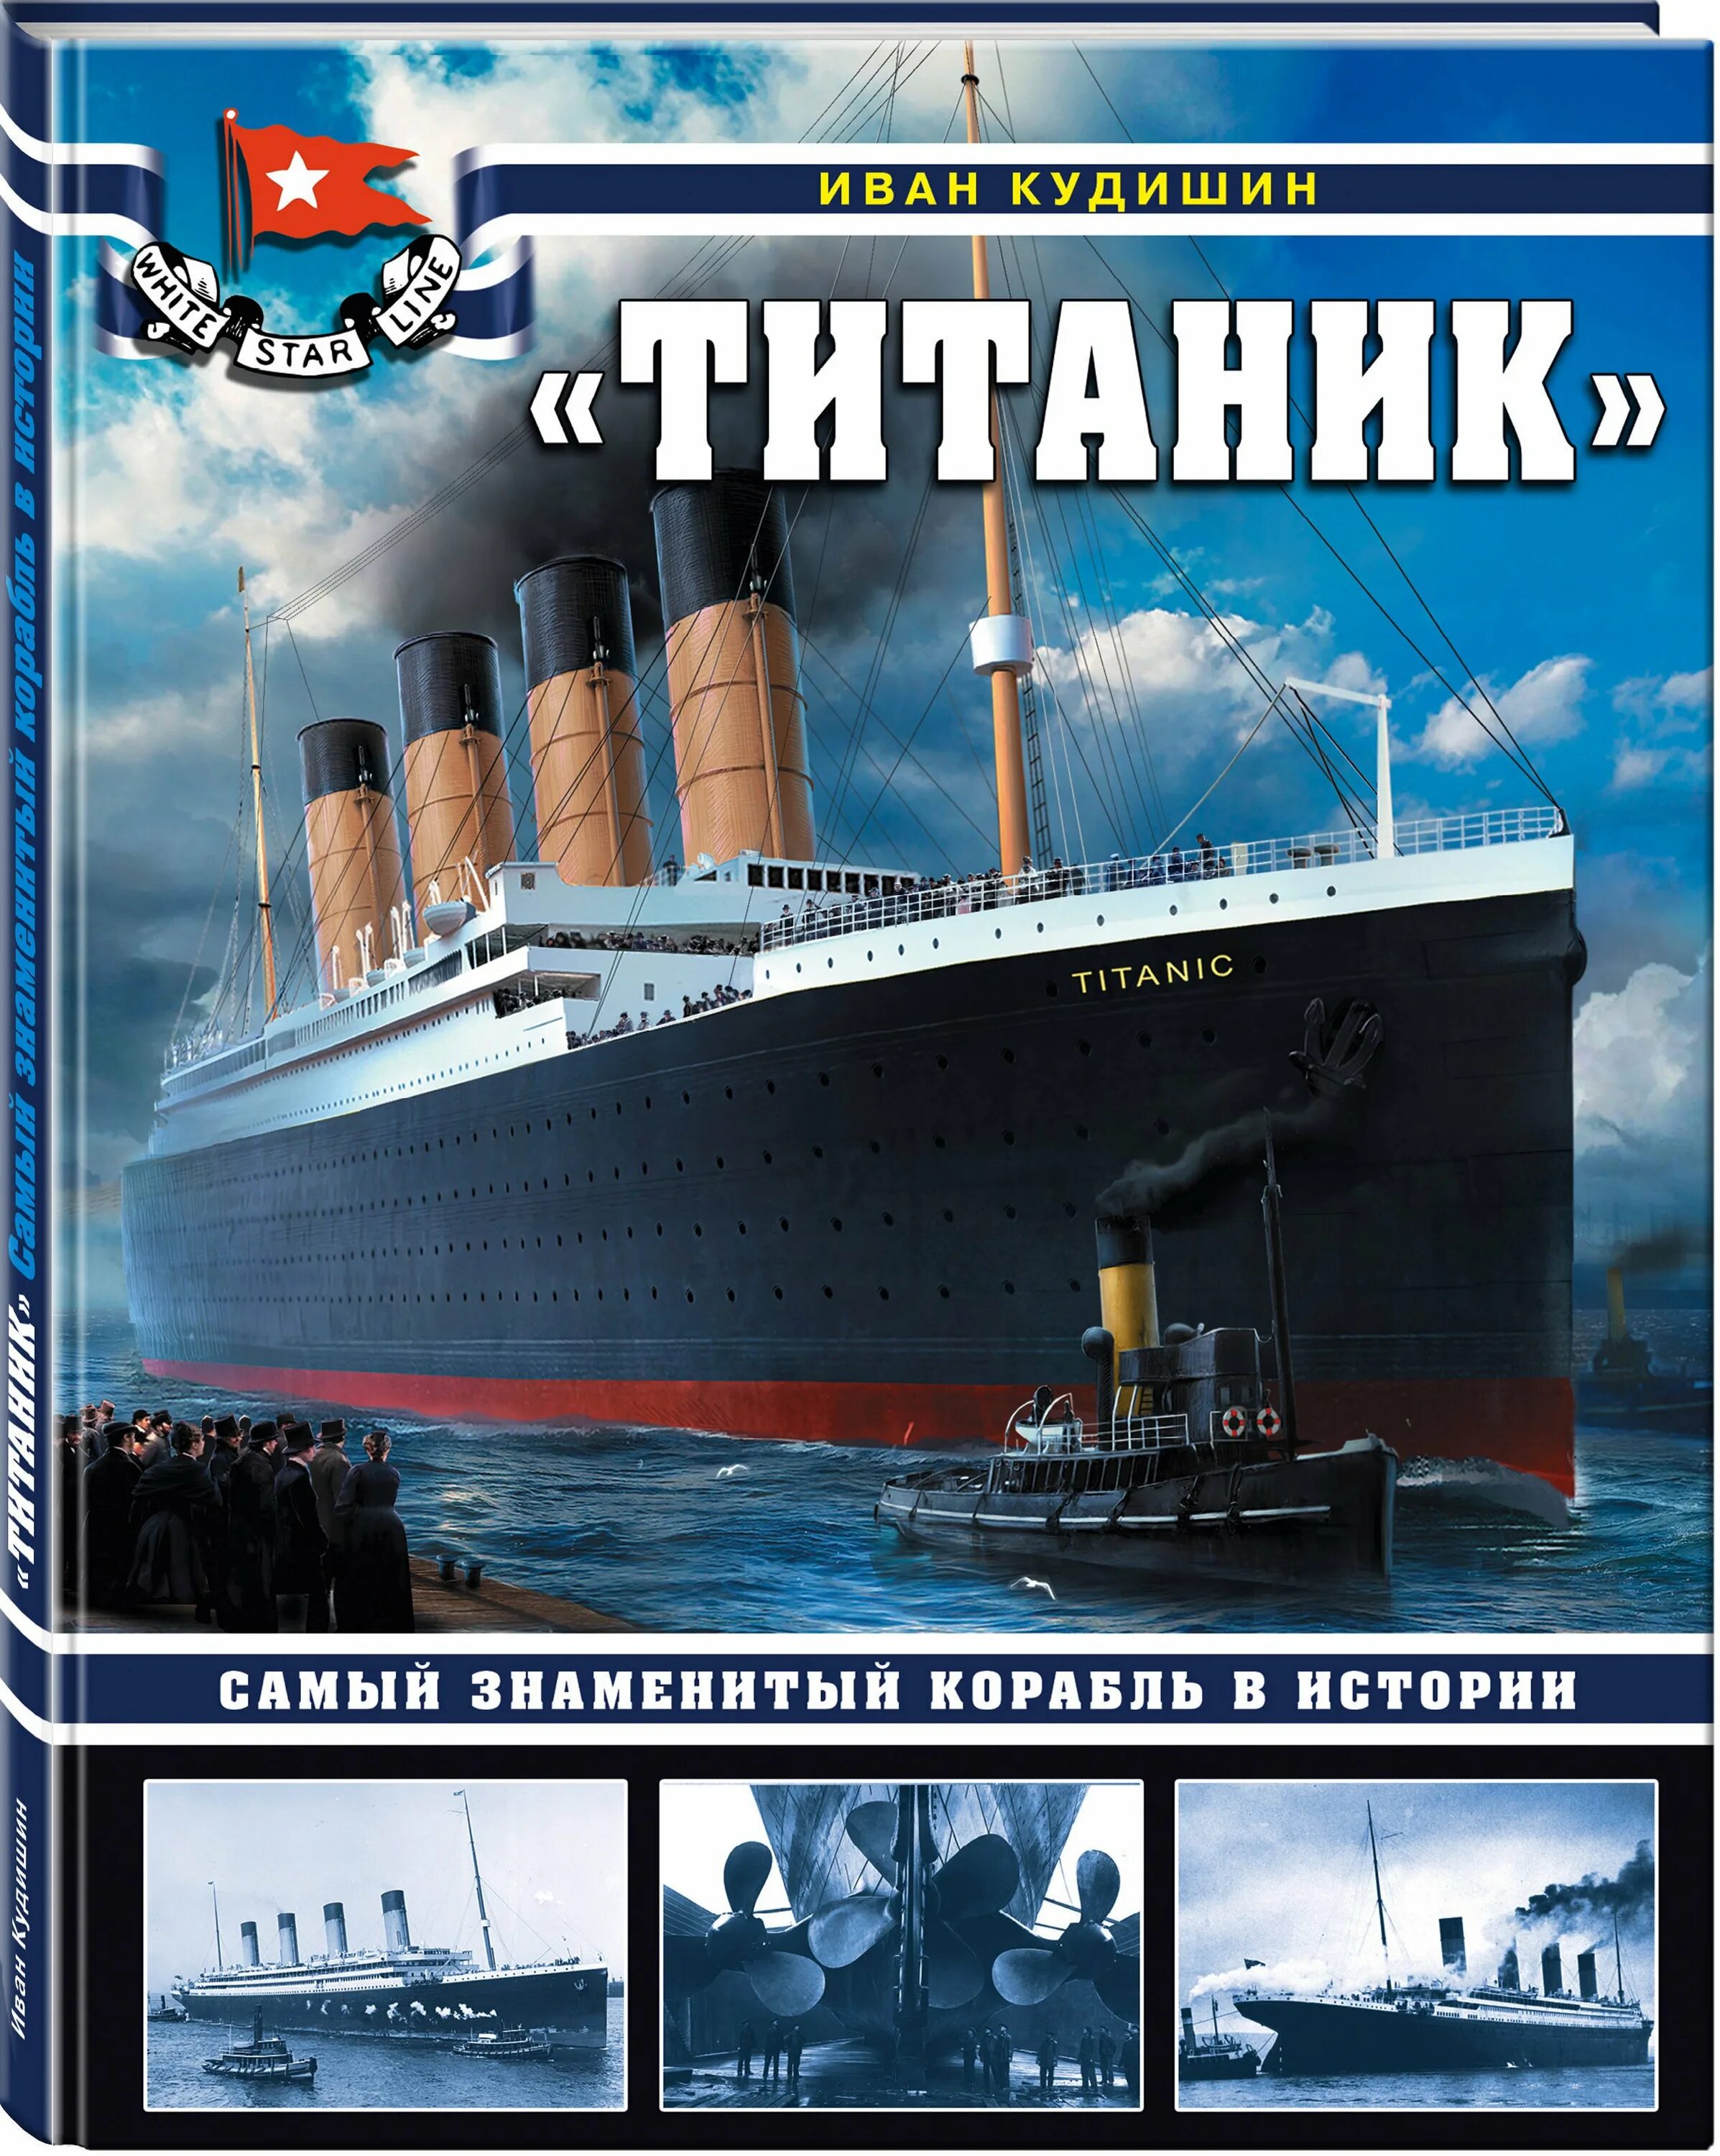 Какой самый известный корабль. «Титаник». Самый знаменитый корабль в истории и. в. Кудишин книга. Книга Титаник самый знаменитый корабль.